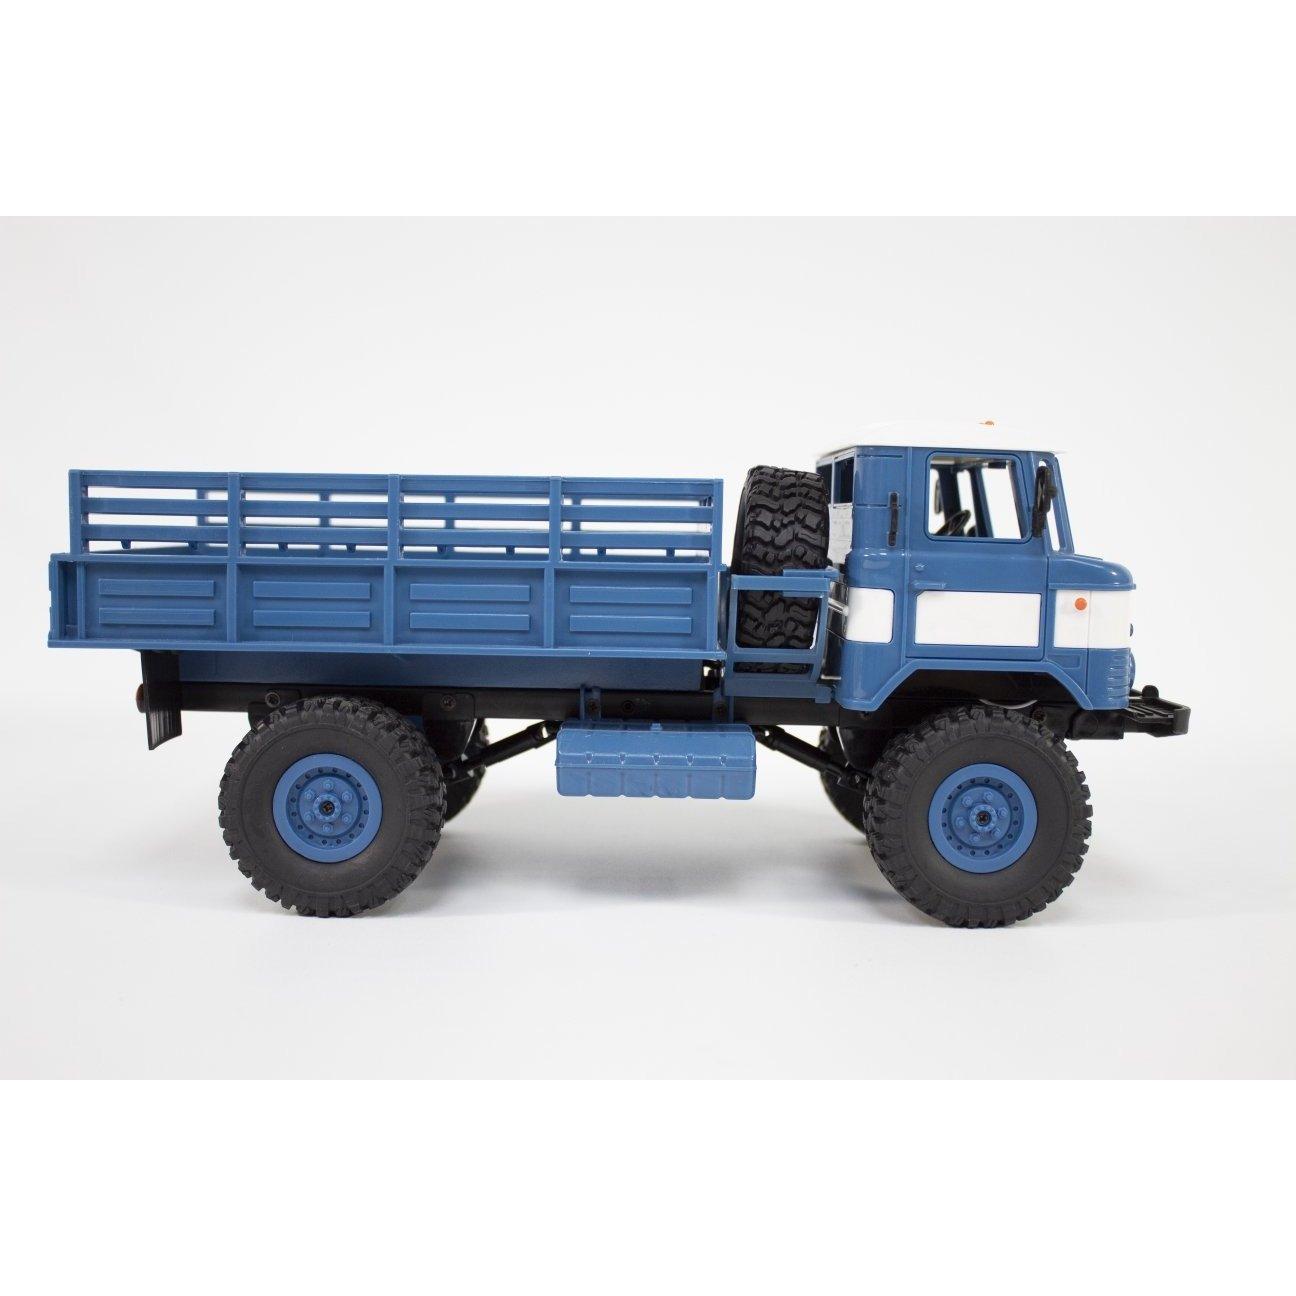 GAZ-66 4x4 1:16th Scale RTR 2.4GHz RC Truck